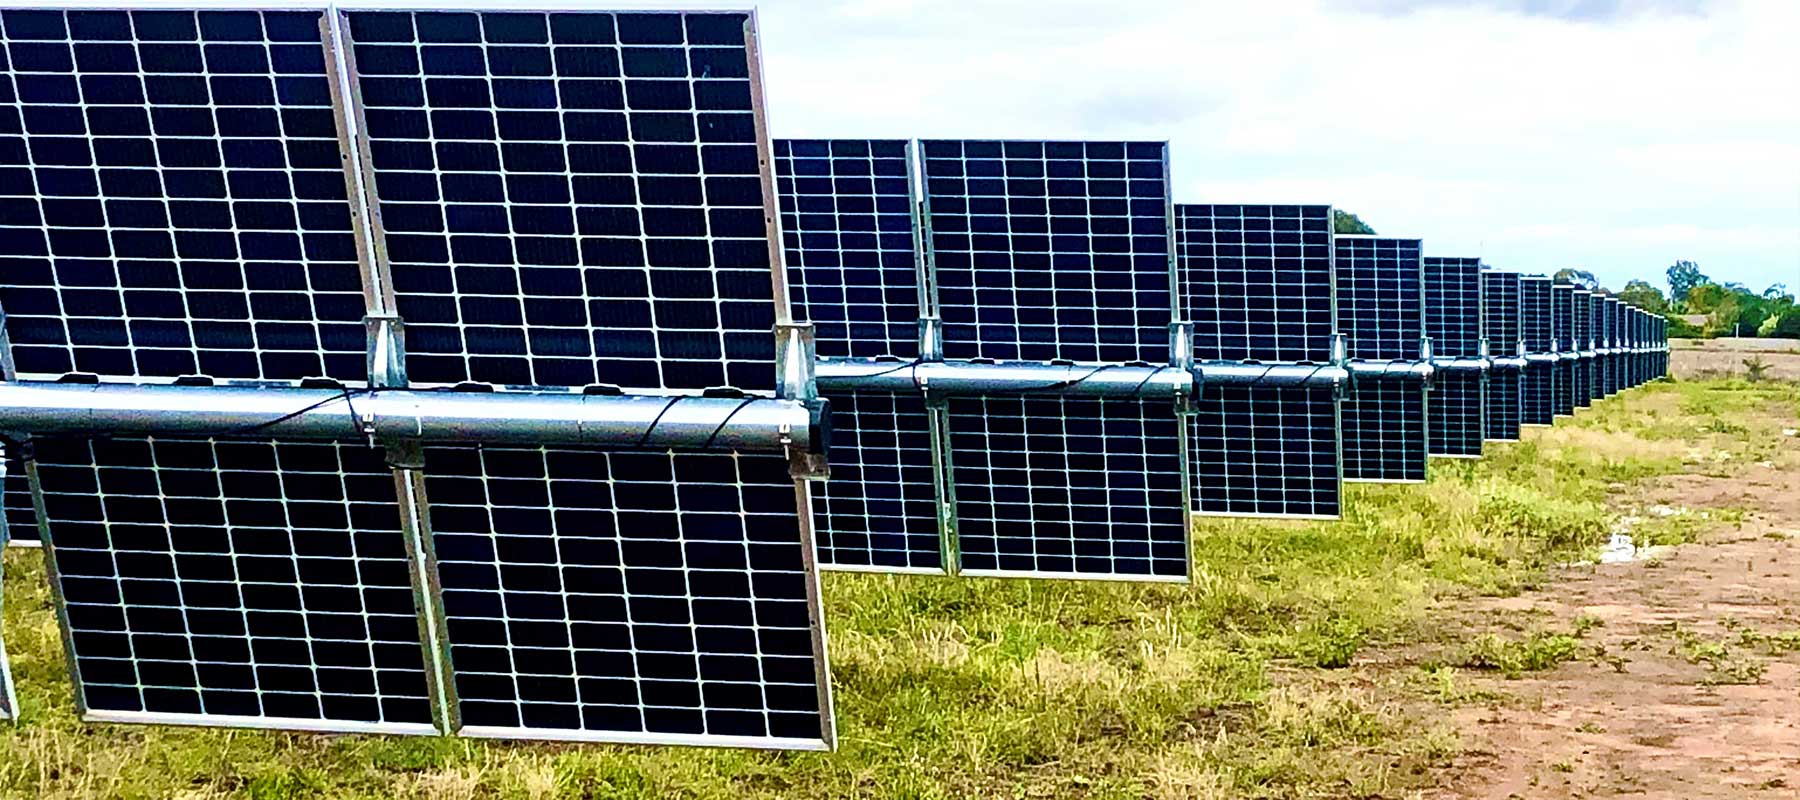 Leeton Solar Farm 4